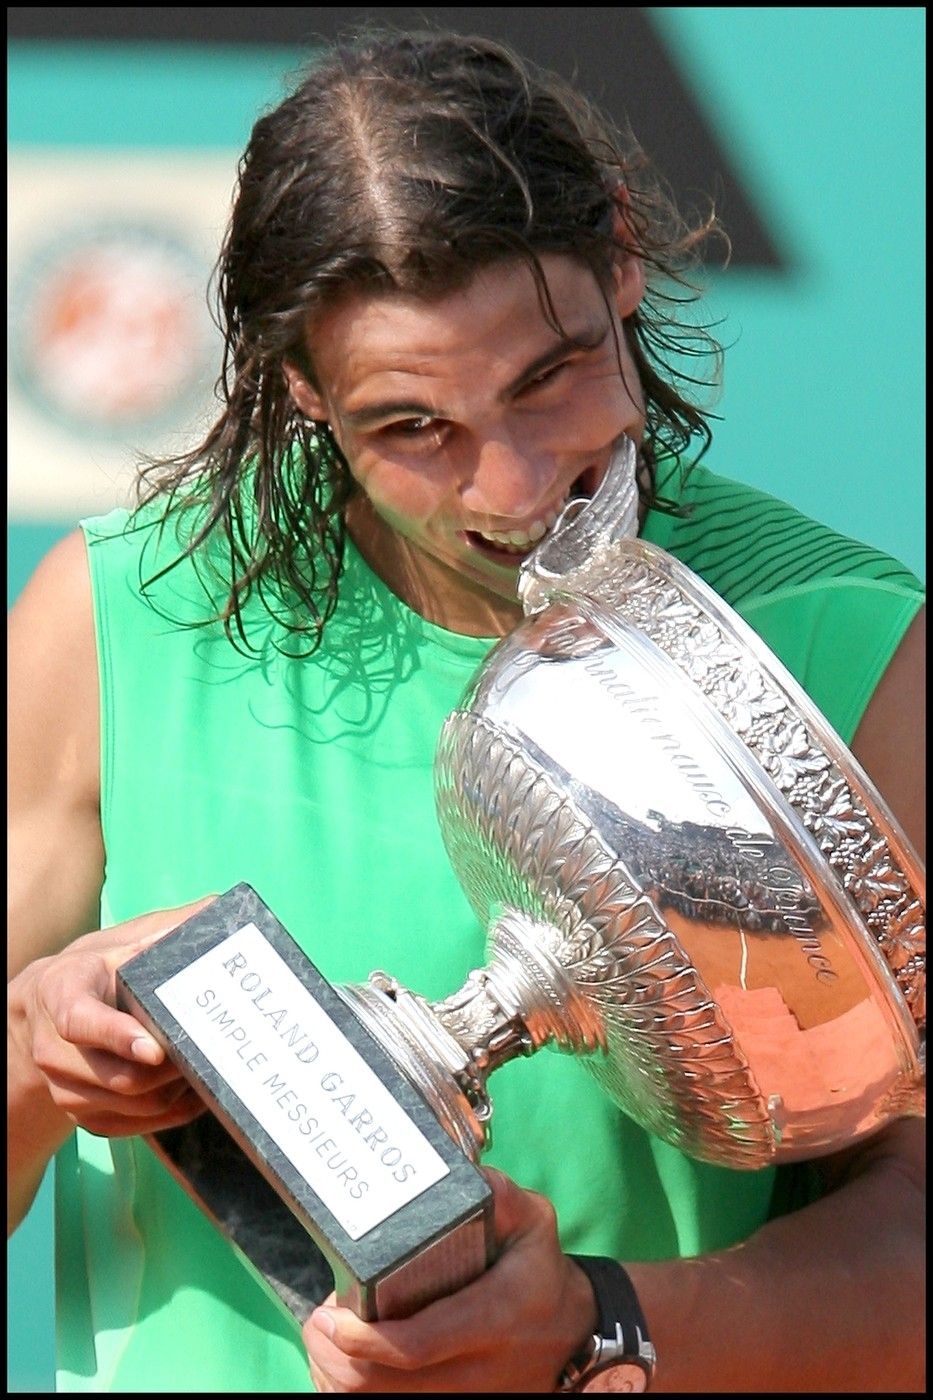 2008 - Neuvěříte! Čtvrtý titul získal tehdy dvaadvacetiletý hráč, aniž by ztratil byť jen jedinou sadu. V semifinále to odnesl mimo jiné Djokovič a ve finále...Ano, Roger Federer.